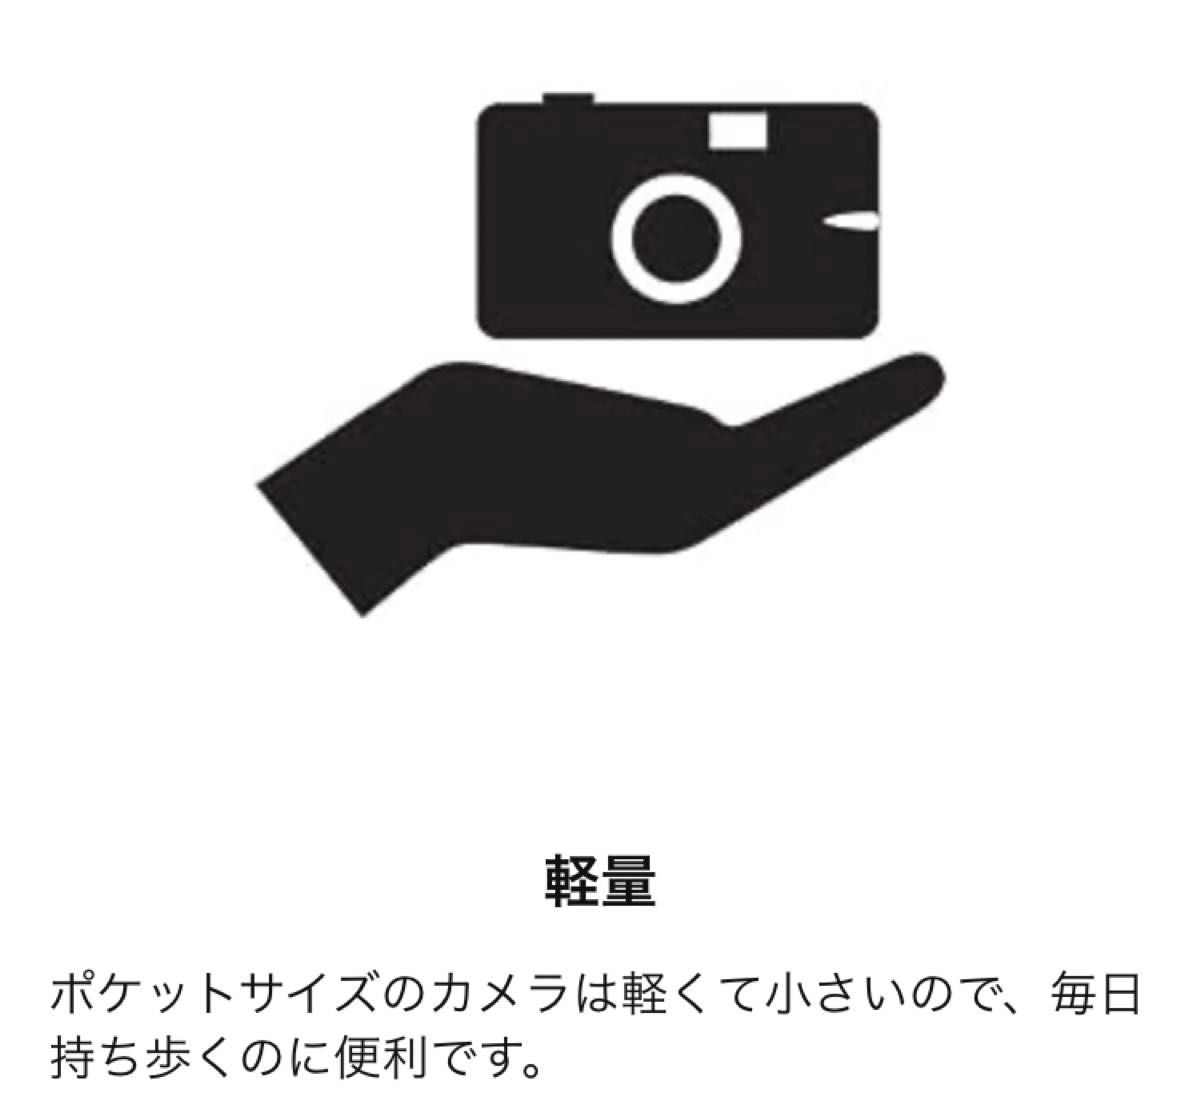 【新品未開封・即日発送】Kodak コダック フィルムカメラ EKTAR H35